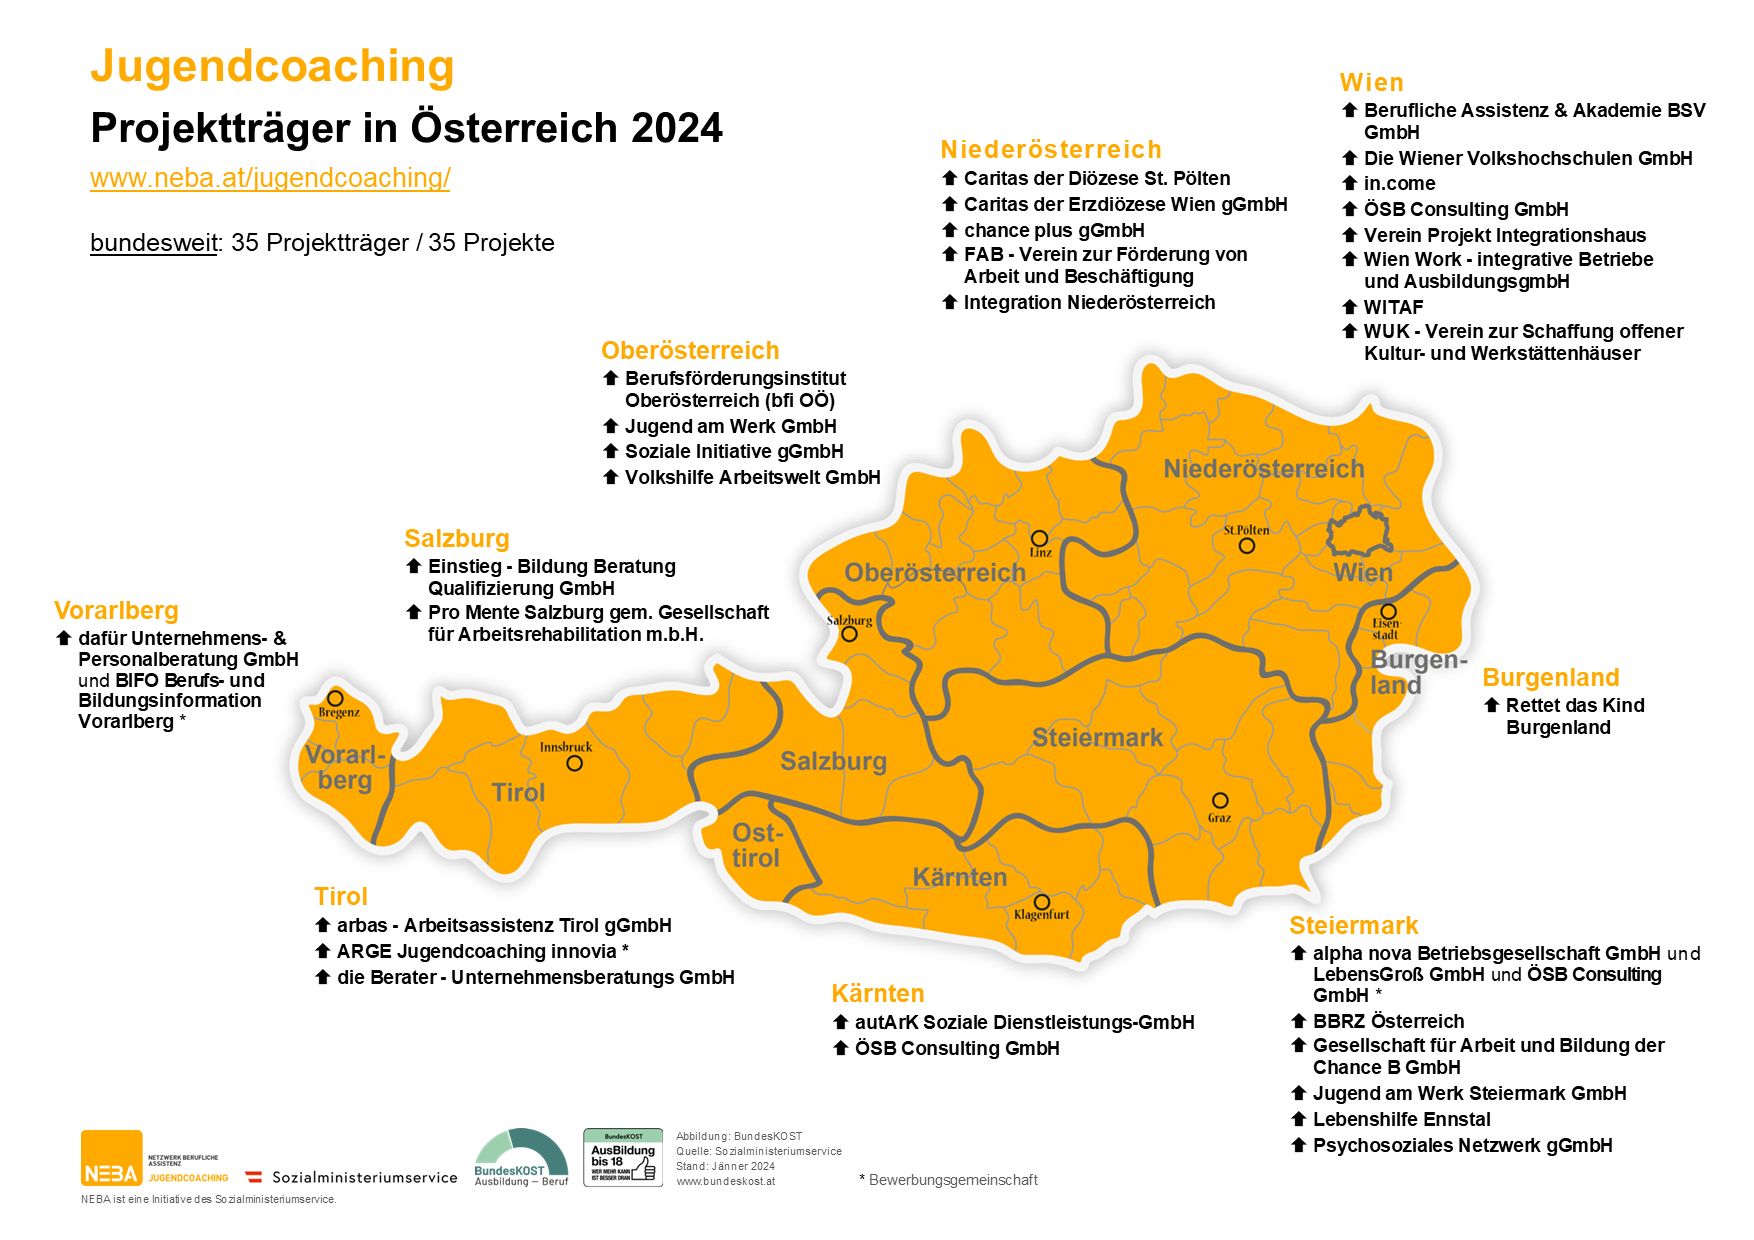 Karte von Österreich mit Jugendcoaching Projekten, siehe auch barrierefreie Textversion Jugendcoaching Projektträger 2024 (PDF)